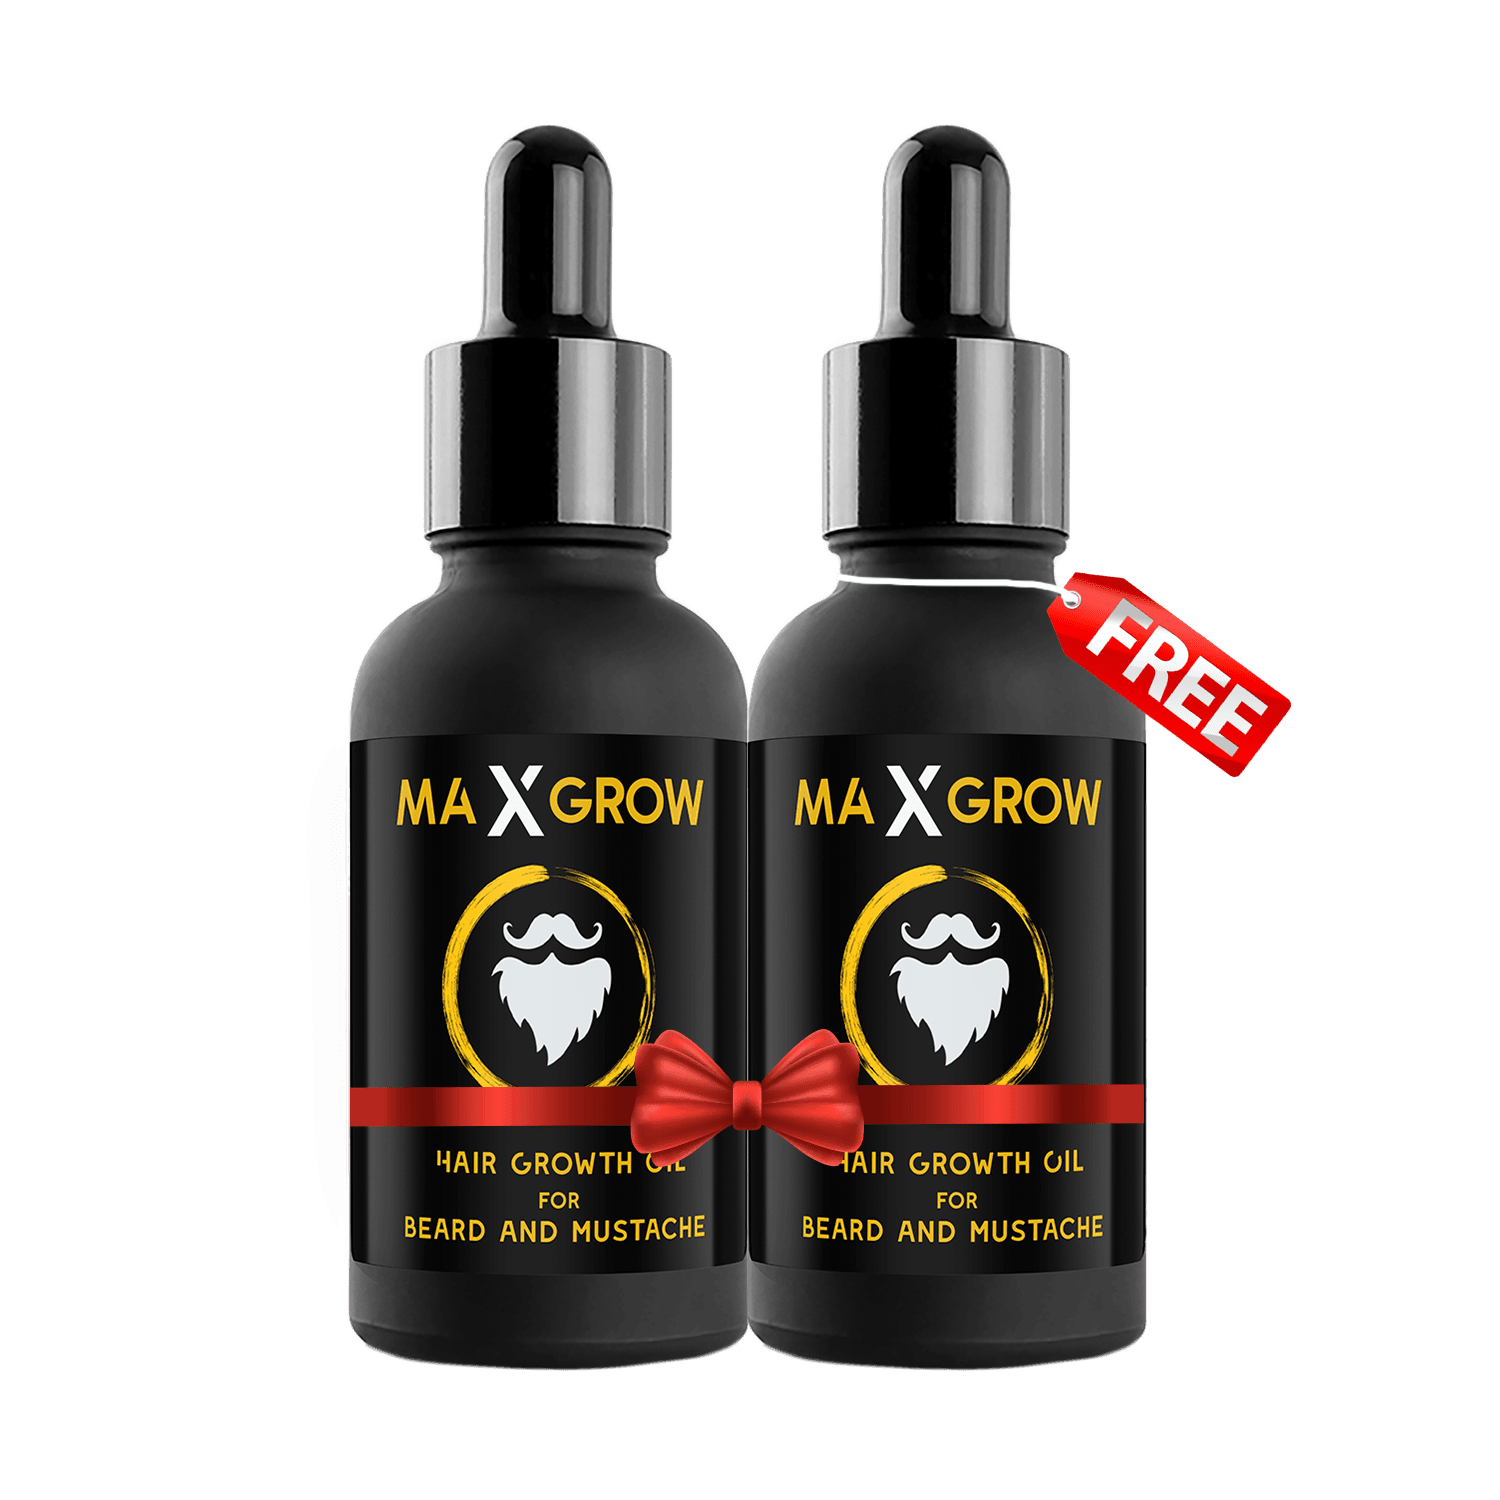 Buy-1 MaxGrow Oil & Get-1 Free - Healthifyme.pk